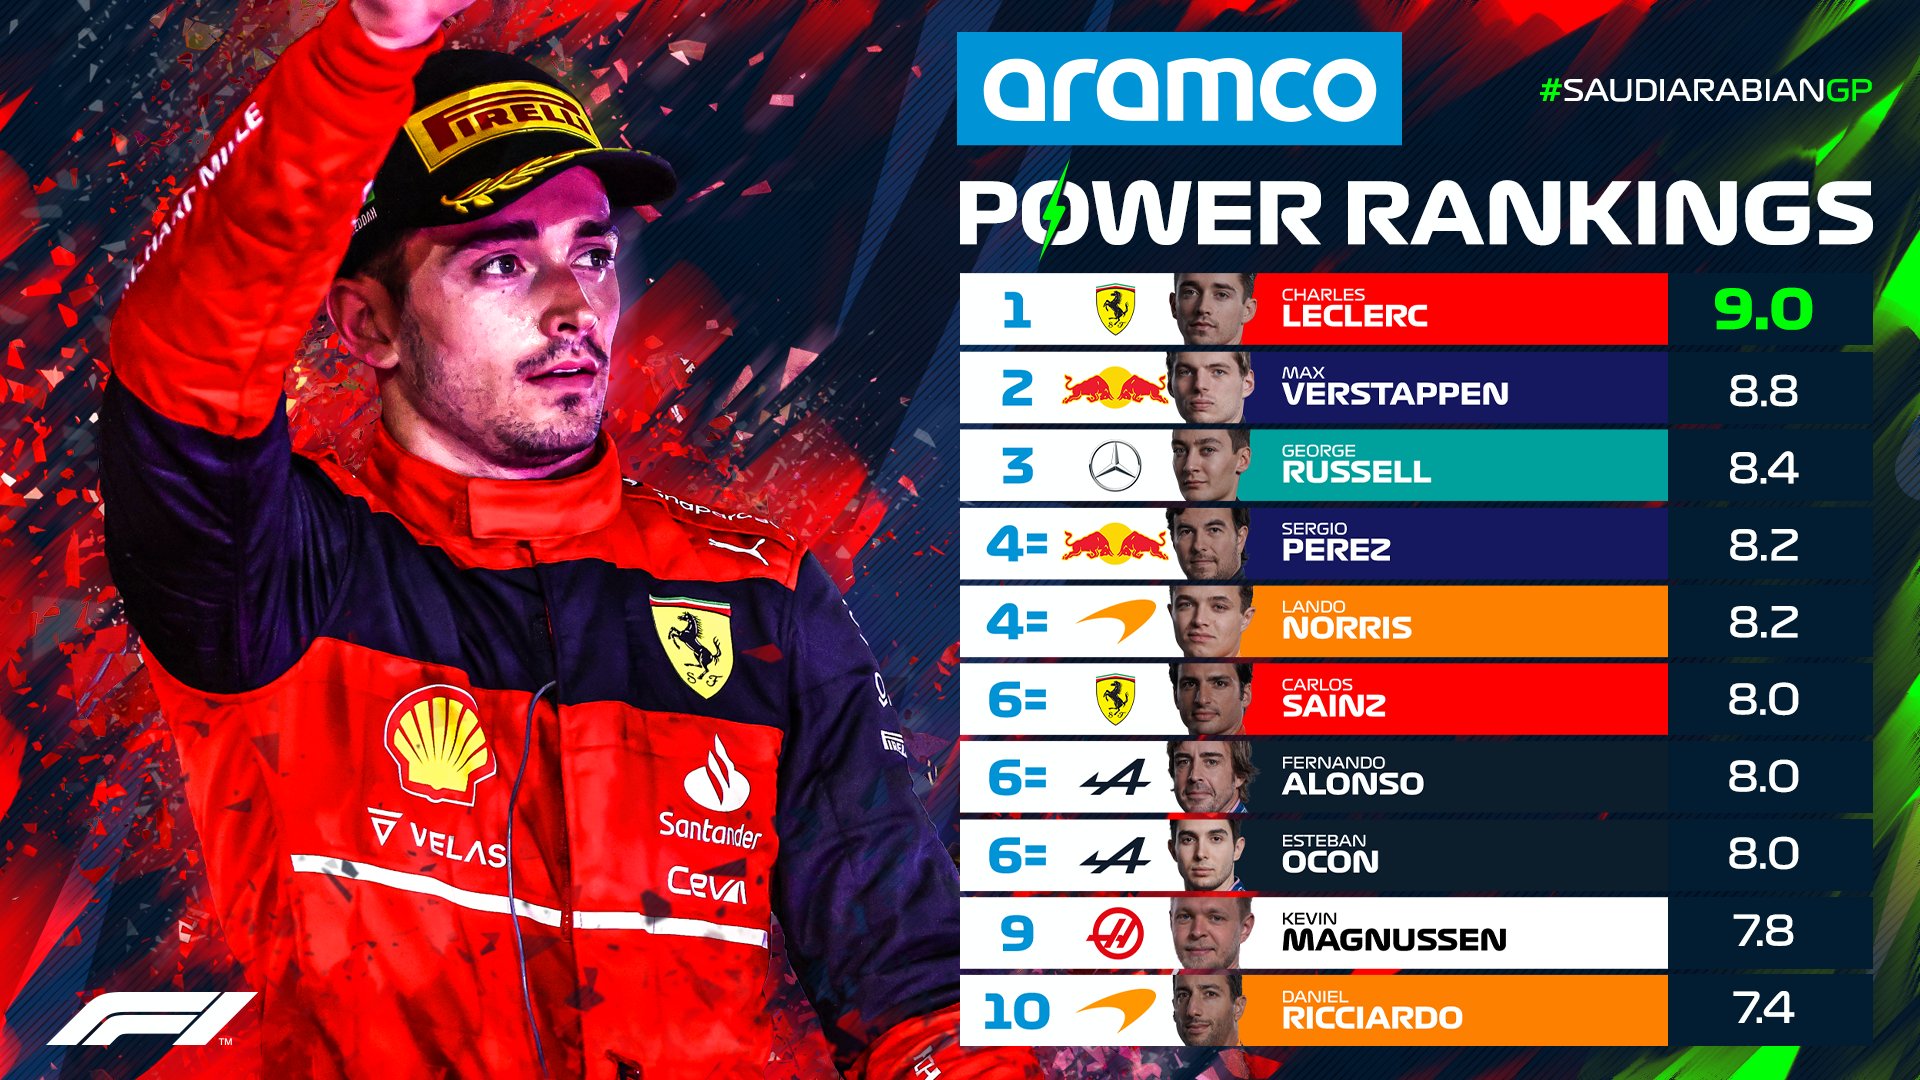 El Power Ranking de la Fórmula 1 tra el GP de Arabia Saudita 2022 (Foto: Twitter/@F1)